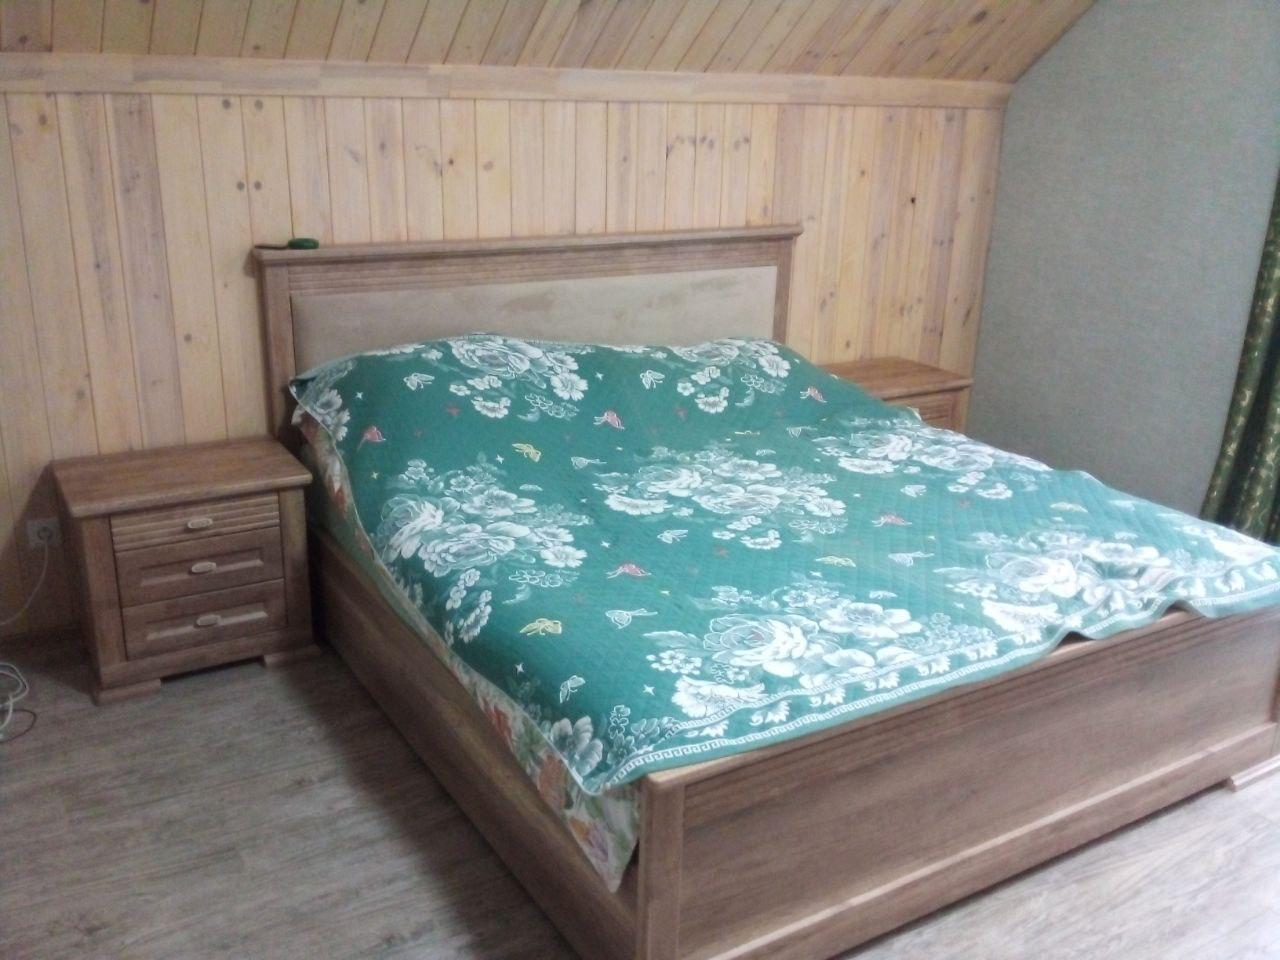 Полутораспальная кровать "Верона" 120 х 200 с подъемным механизмом цвет бежевый изножье низкое